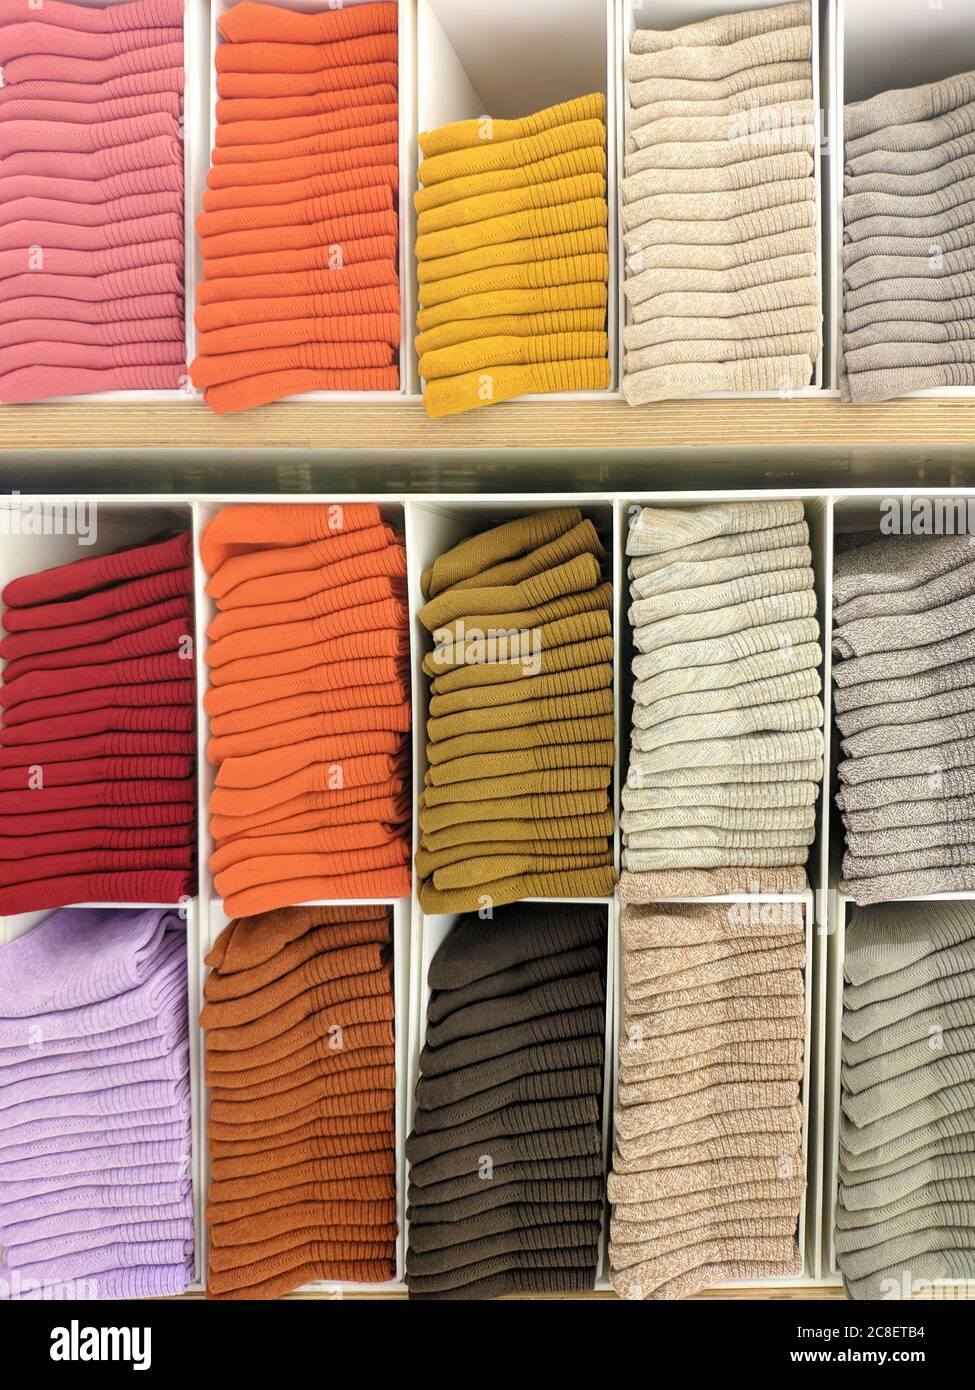 Stapel von bunten Socken zum Verkauf auf dem Regal Stockfotografie - Alamy